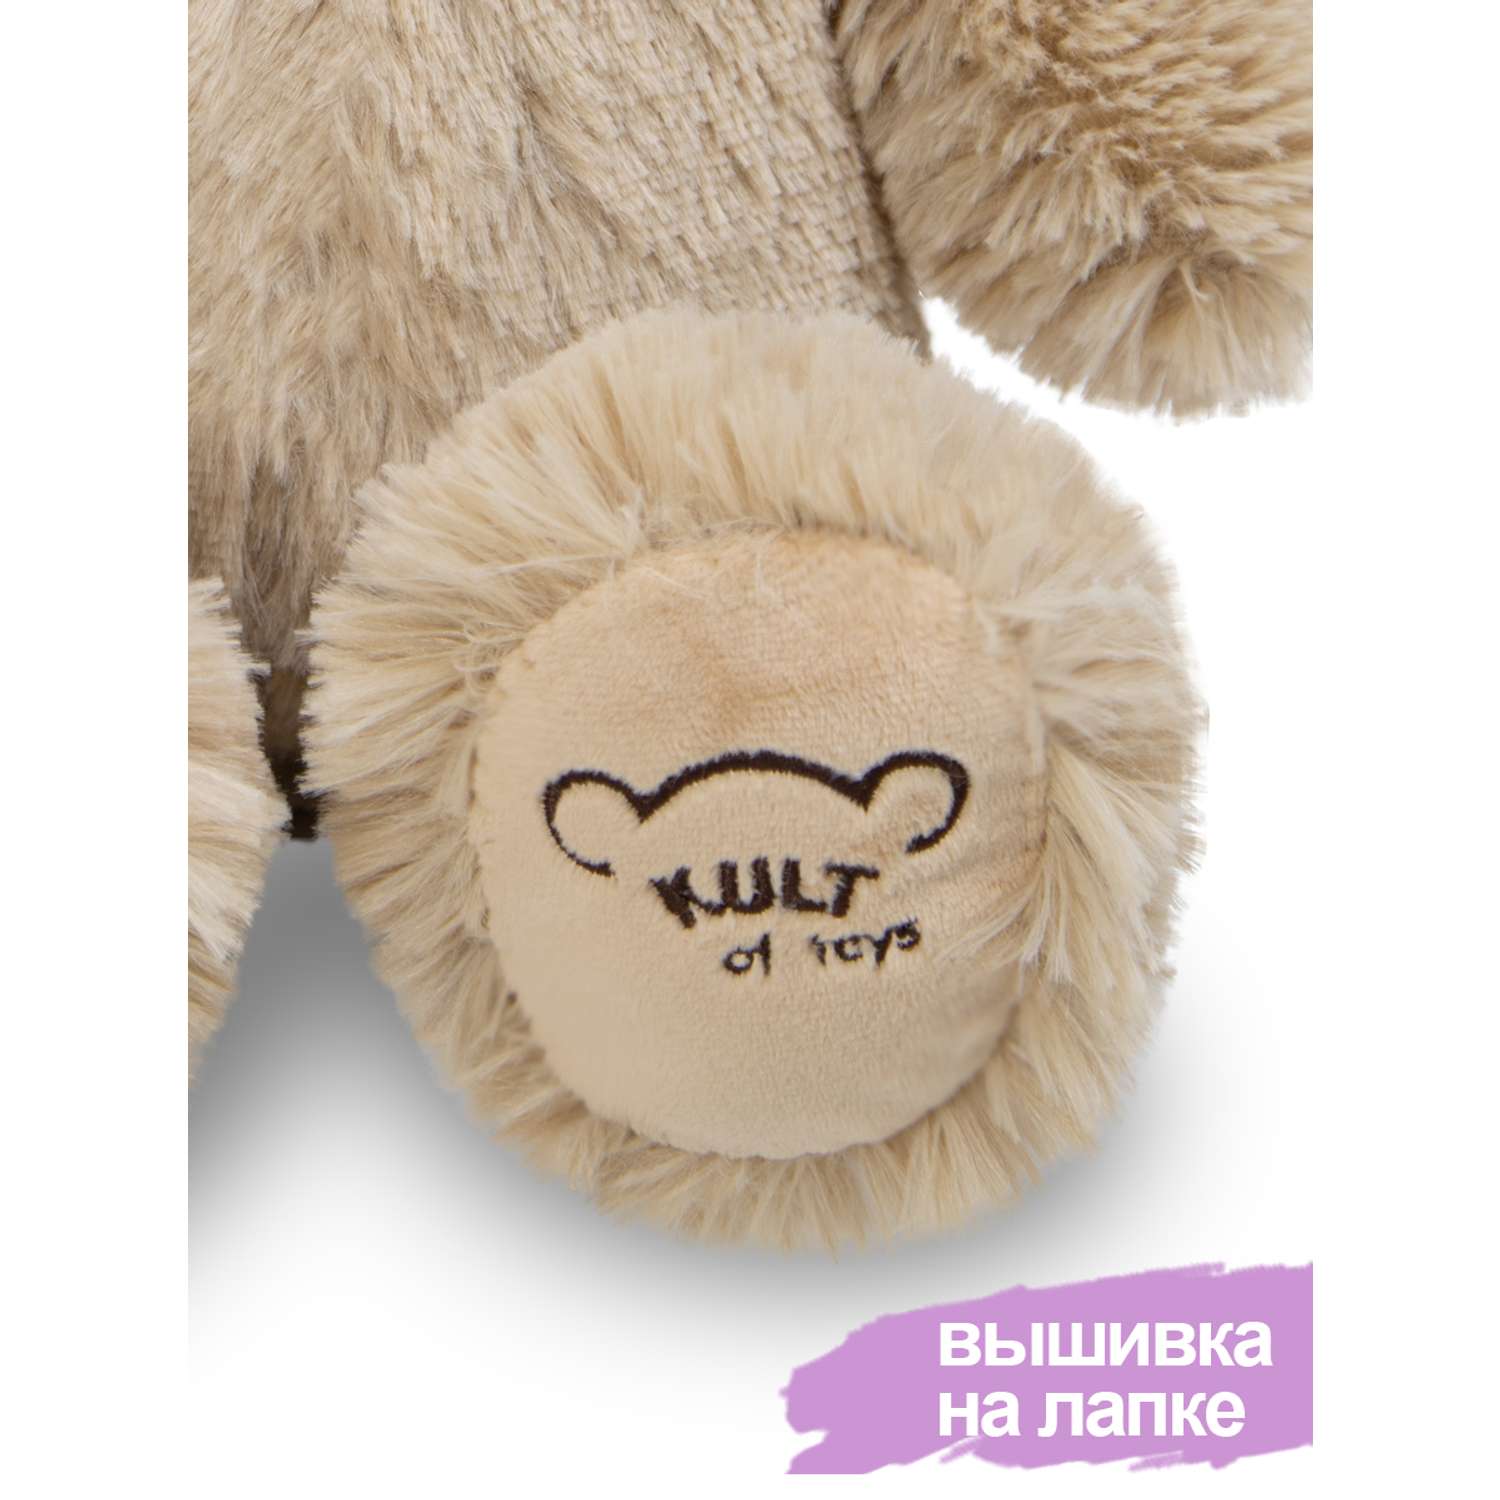 Мягкая игрушка KULT of toys Плюшевый медведь Color Bear кофейный 40 см - фото 7